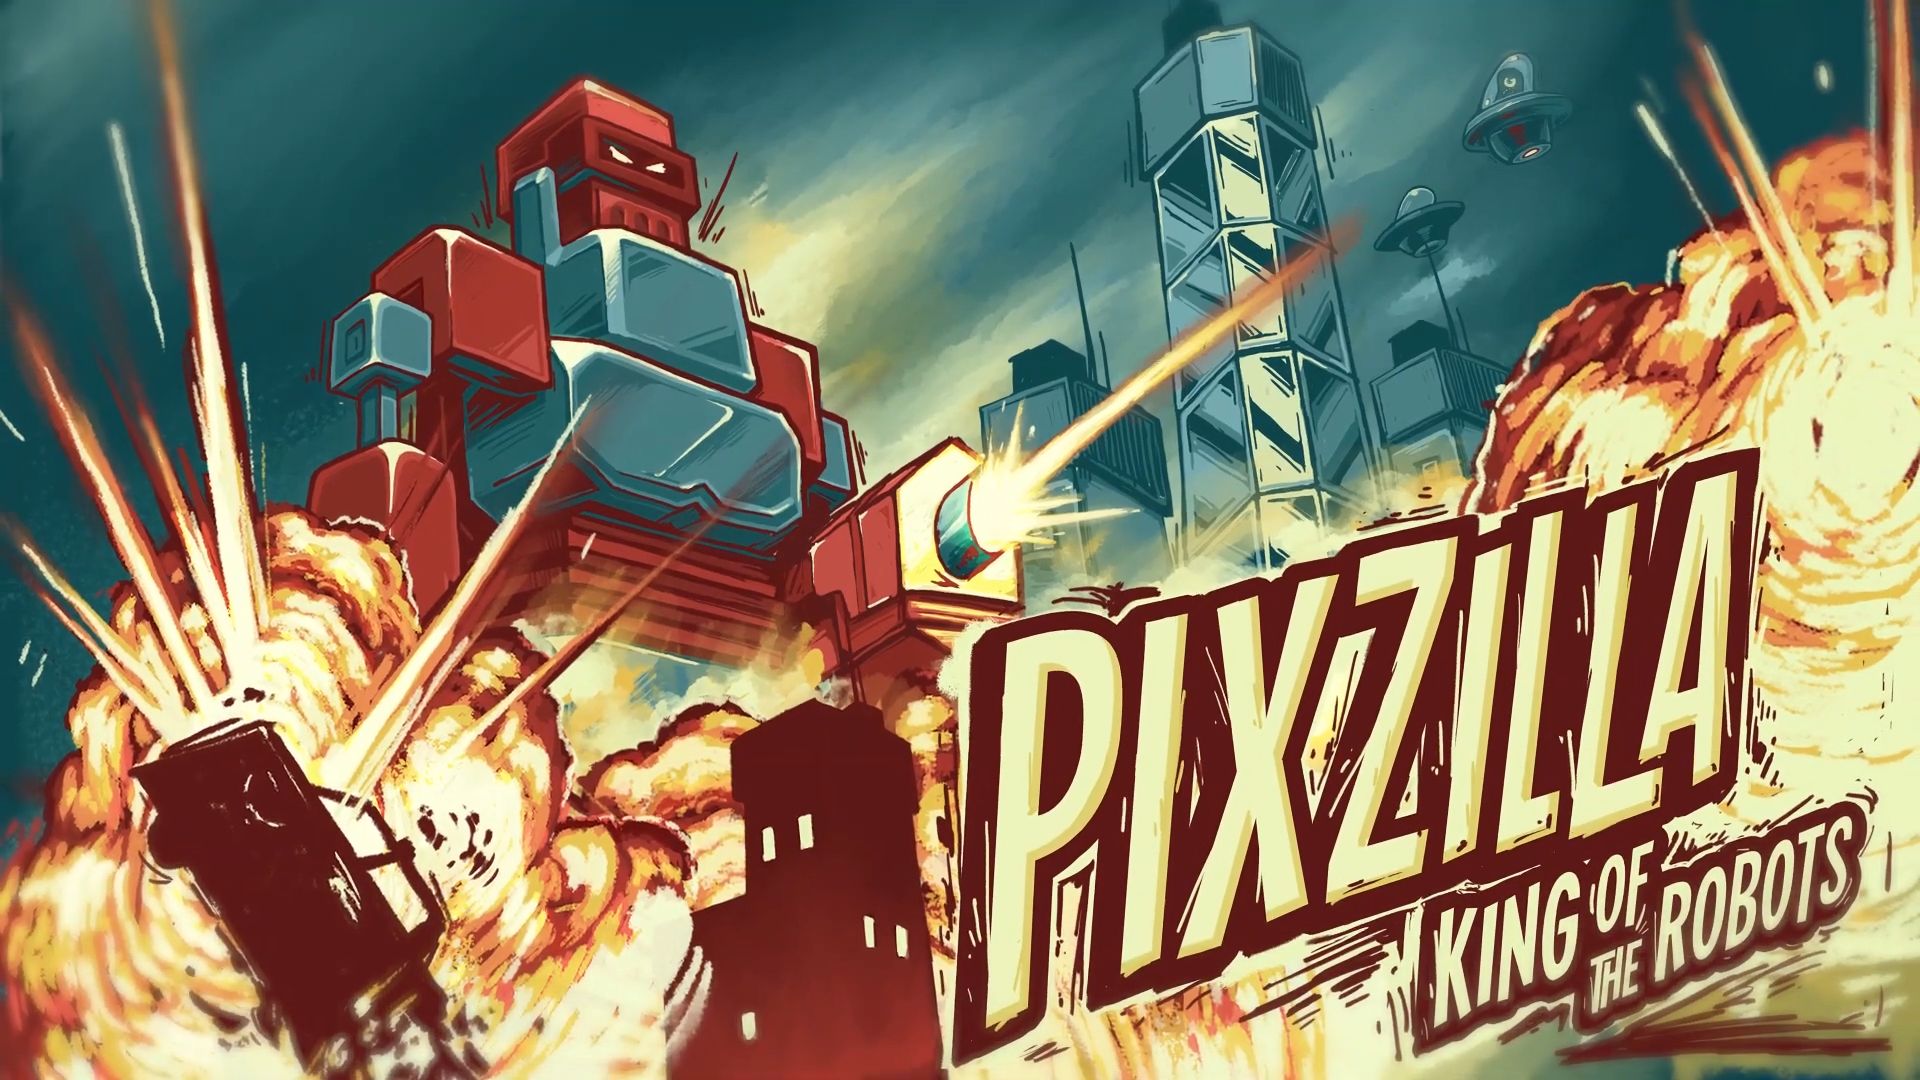 Descargar Pixzilla / King of the Robots gratis para Android.